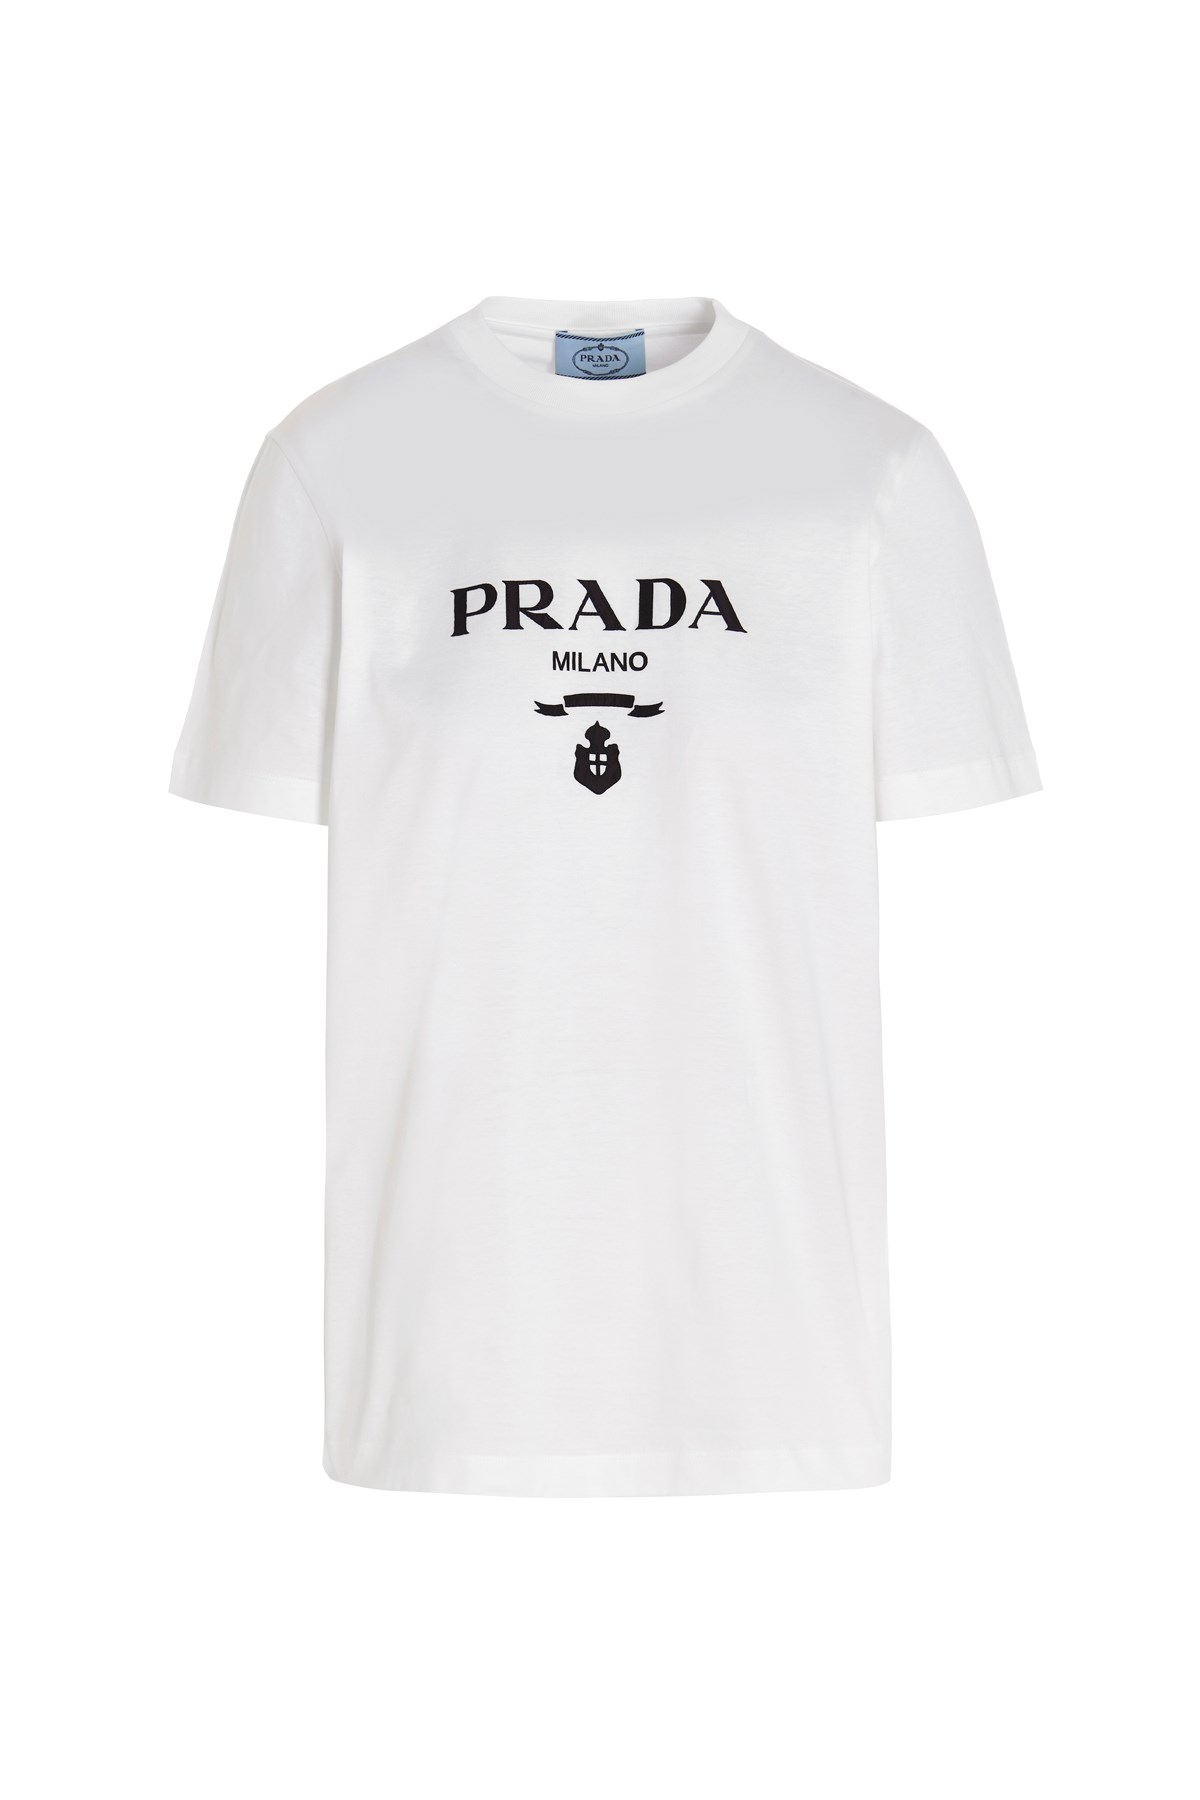 PRADA Logo Print T-Shirt